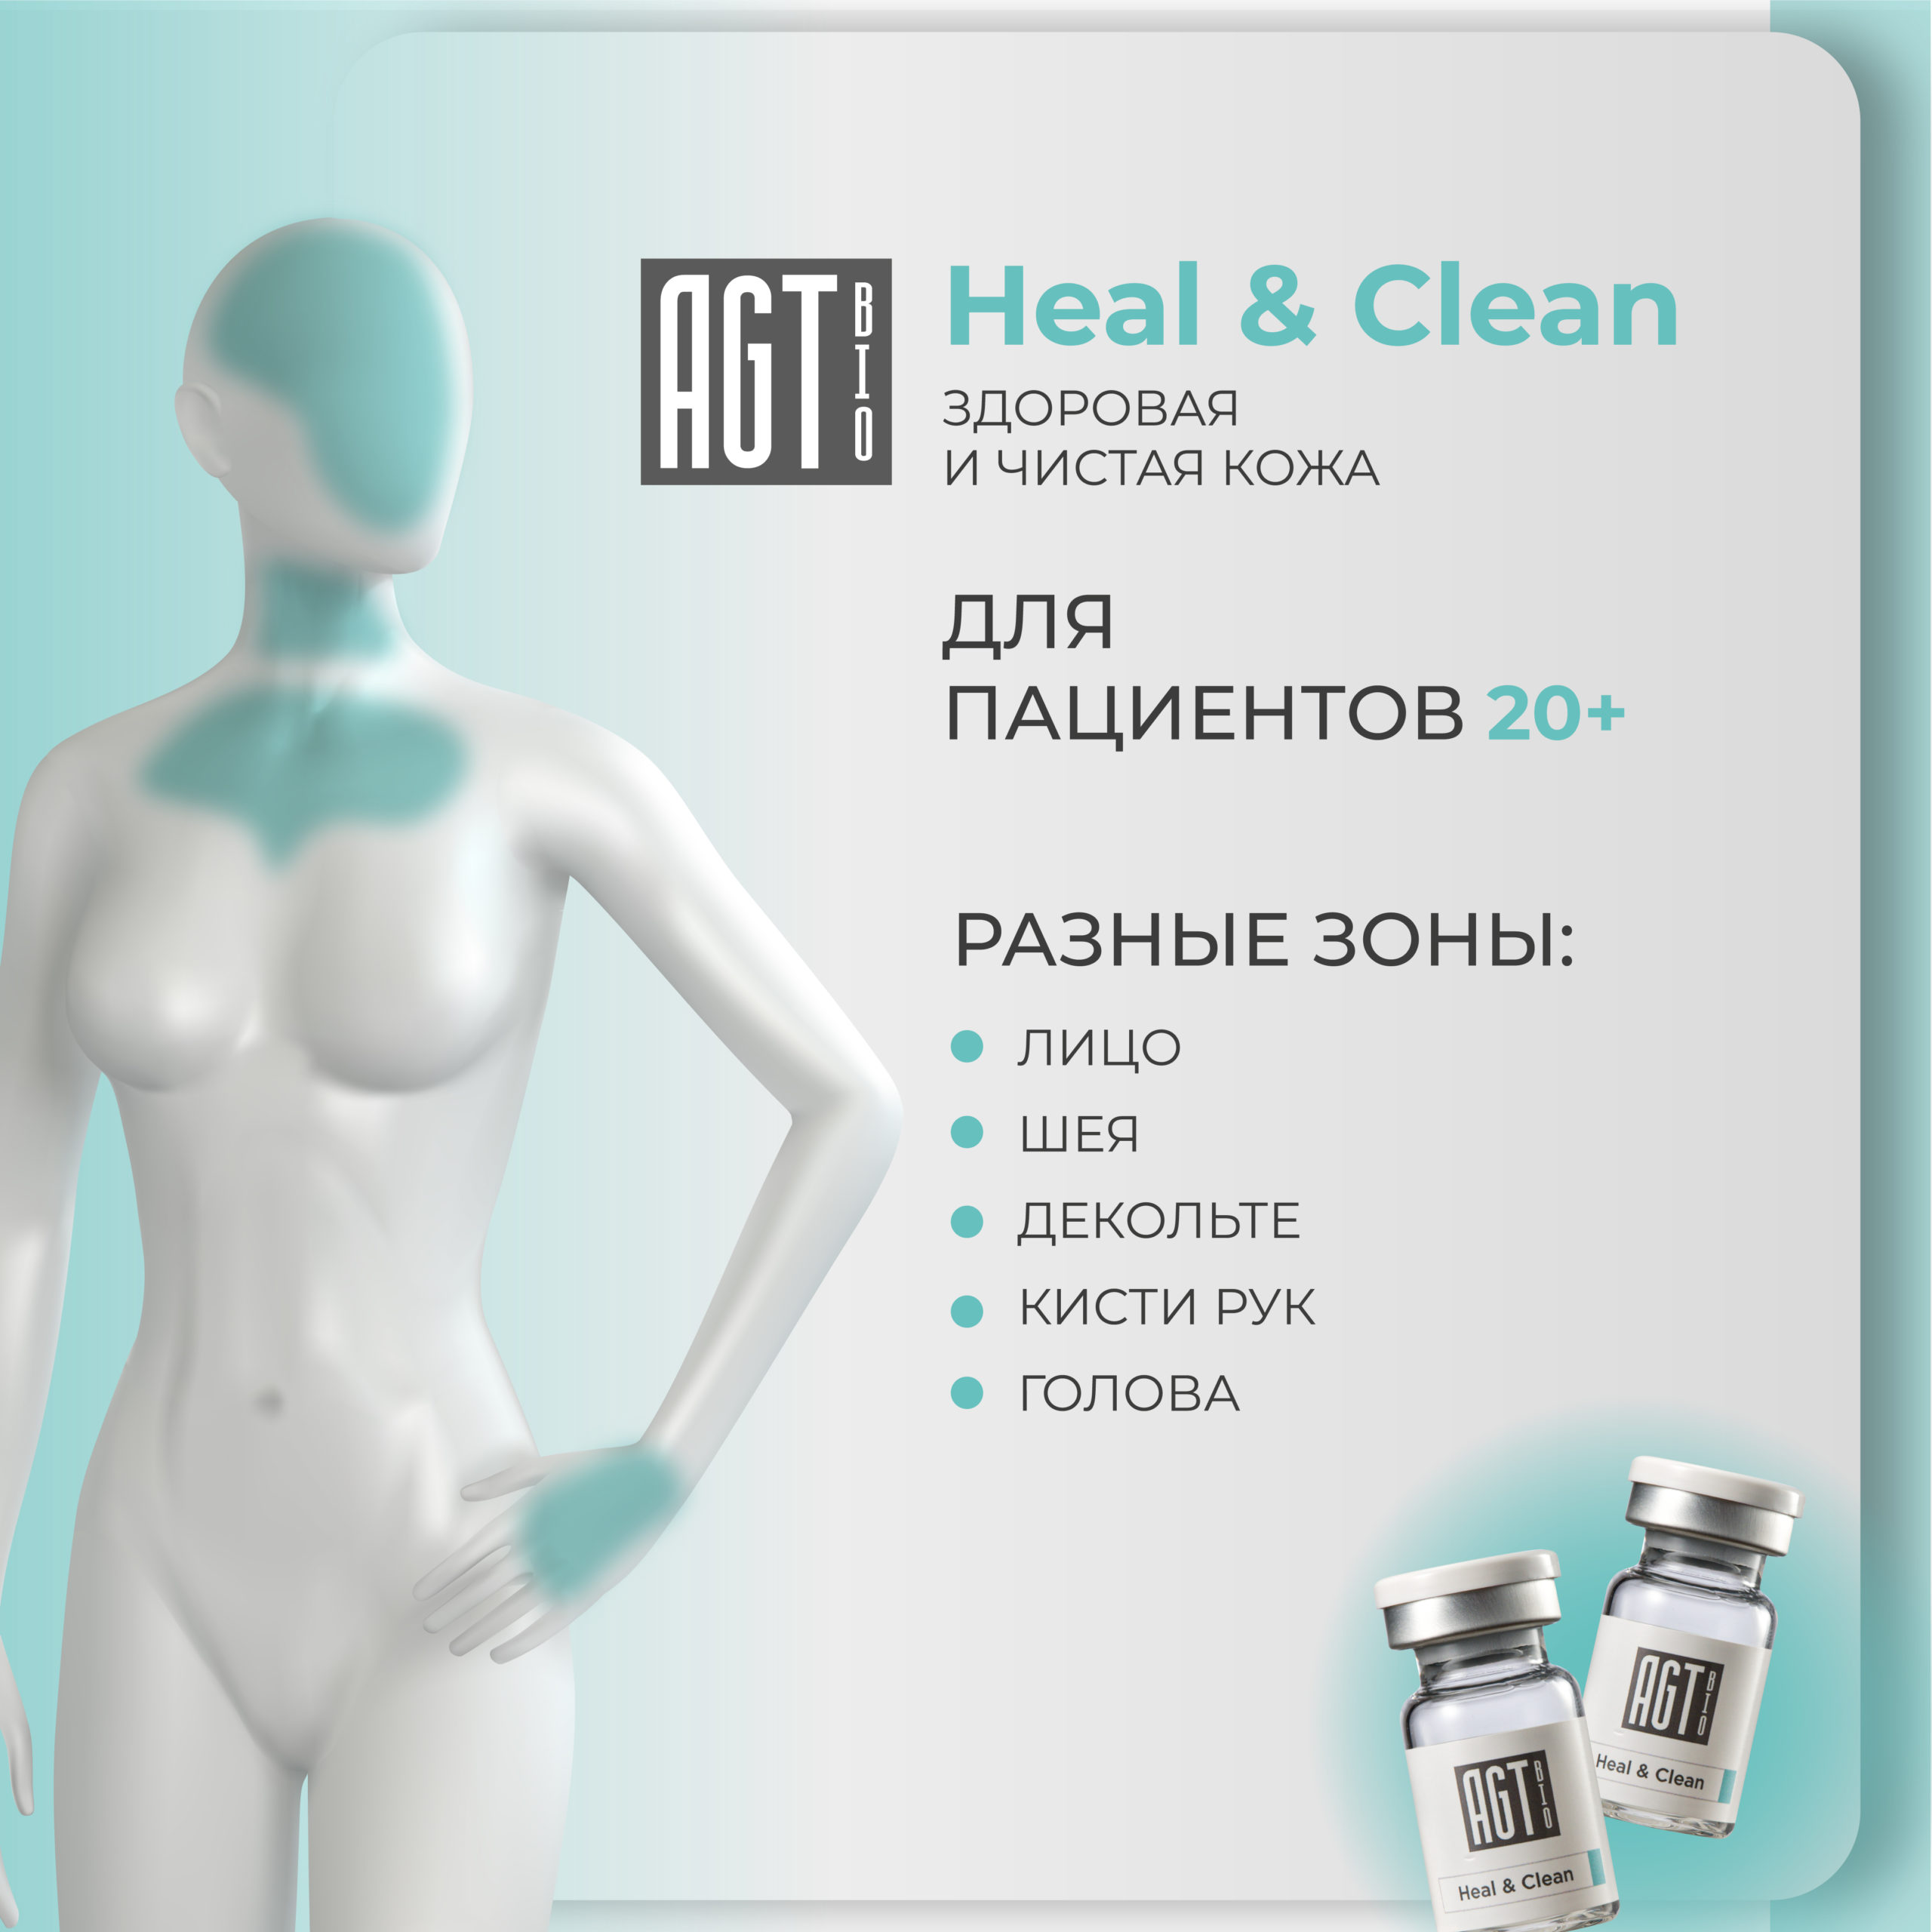 AGT Bio Heal & Clean